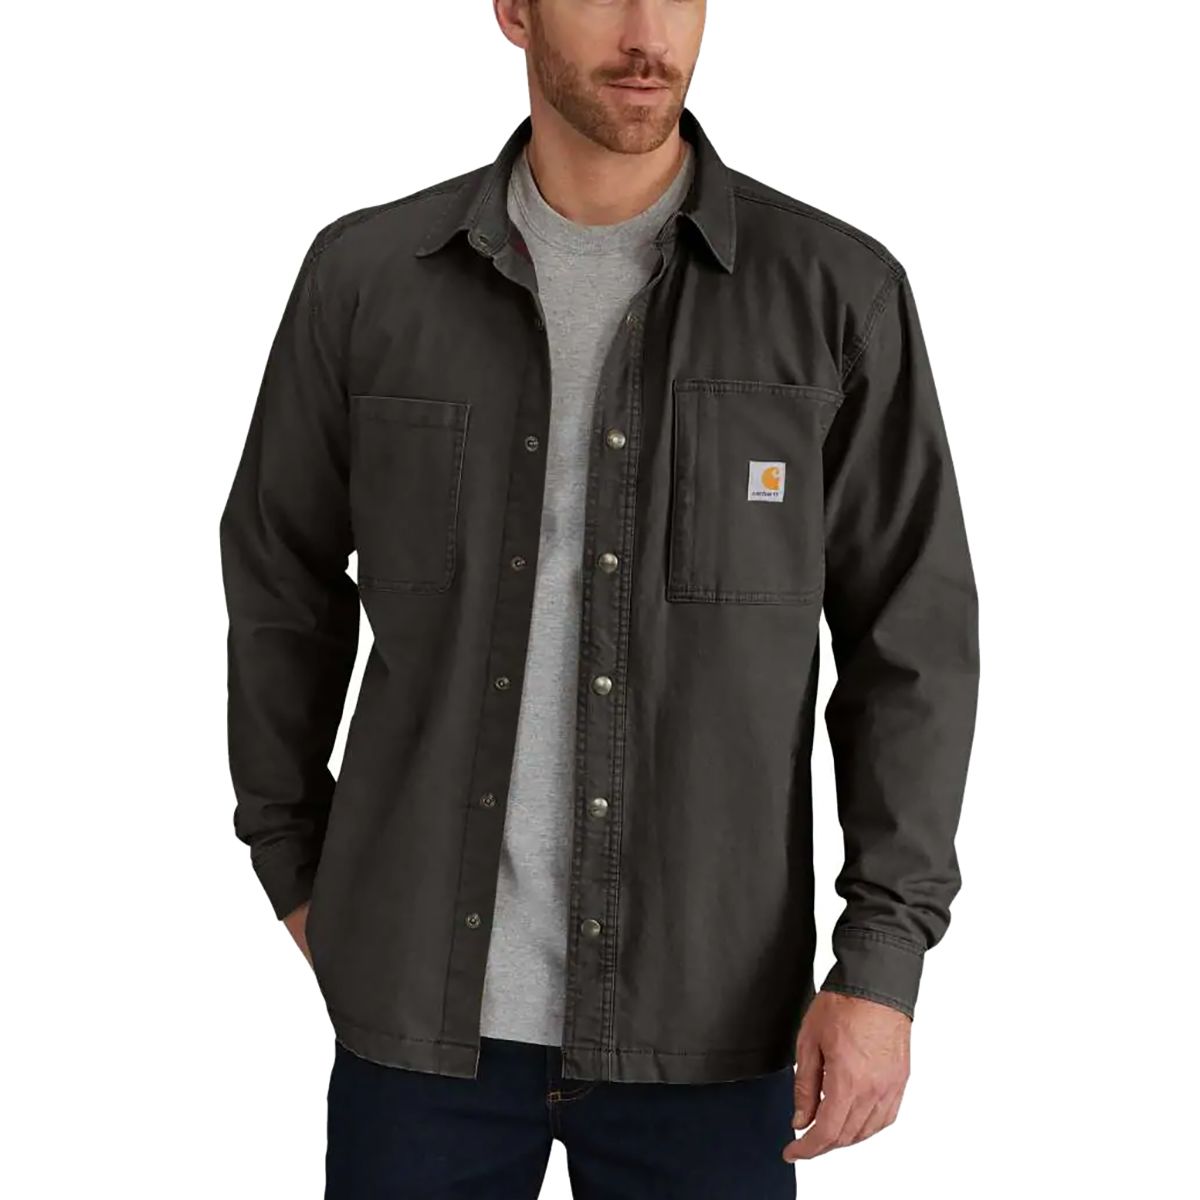 Carhartt Rugged Flex Rigby Shirt Jacket - Men's | Backcountry.com